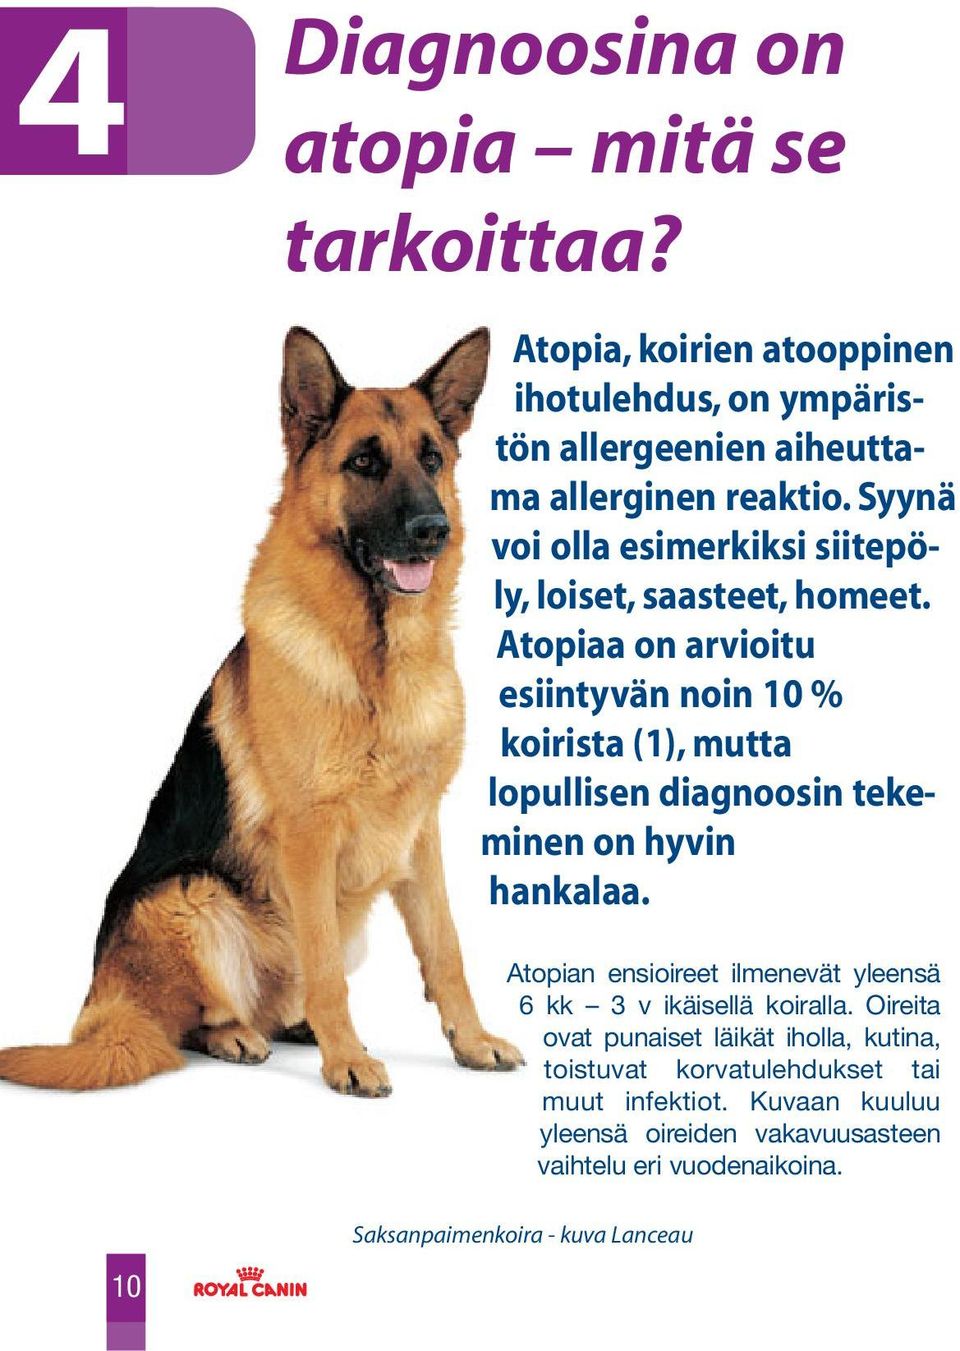 Atopiaa on arvioitu esiintyvän noin 10 % koirista (1), mutta lopullisen diagnoosin tekeminen on hyvin hankalaa.